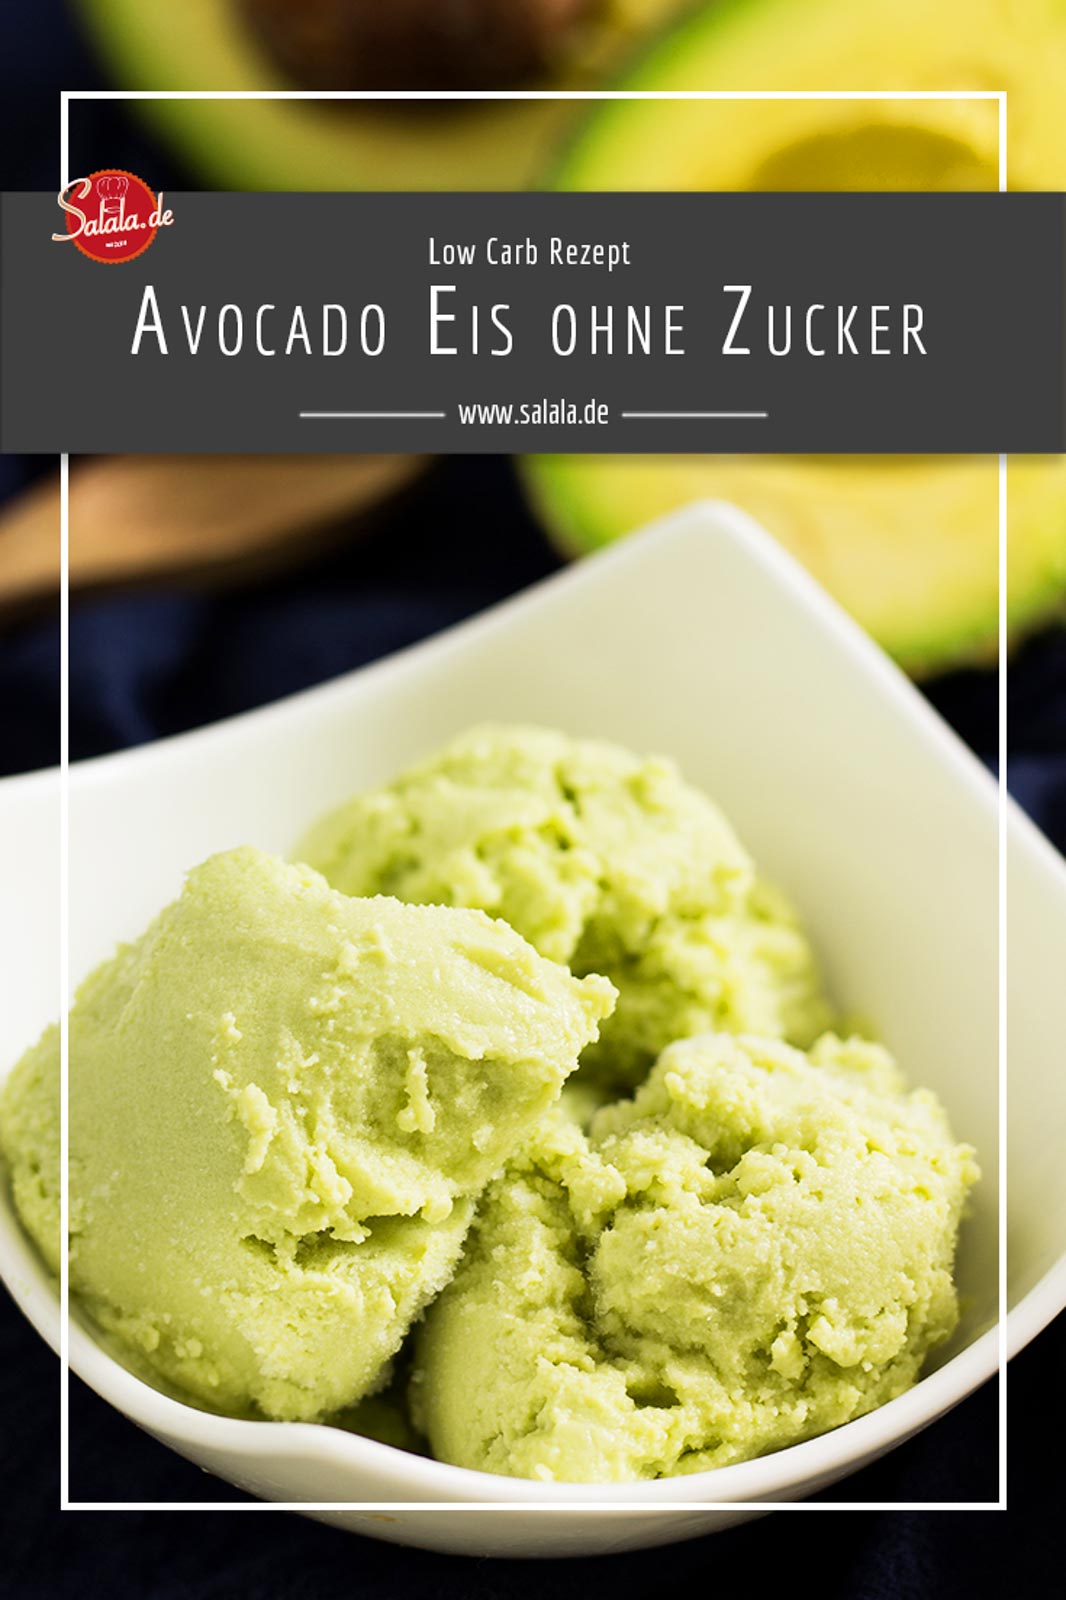 Avocado Eis ohne Zucker - by salala.de - mit Kokosmilch selber machen mit Eismaschine Ibywind YF700 Rezept #zuckerfrei #eis #lowcarb